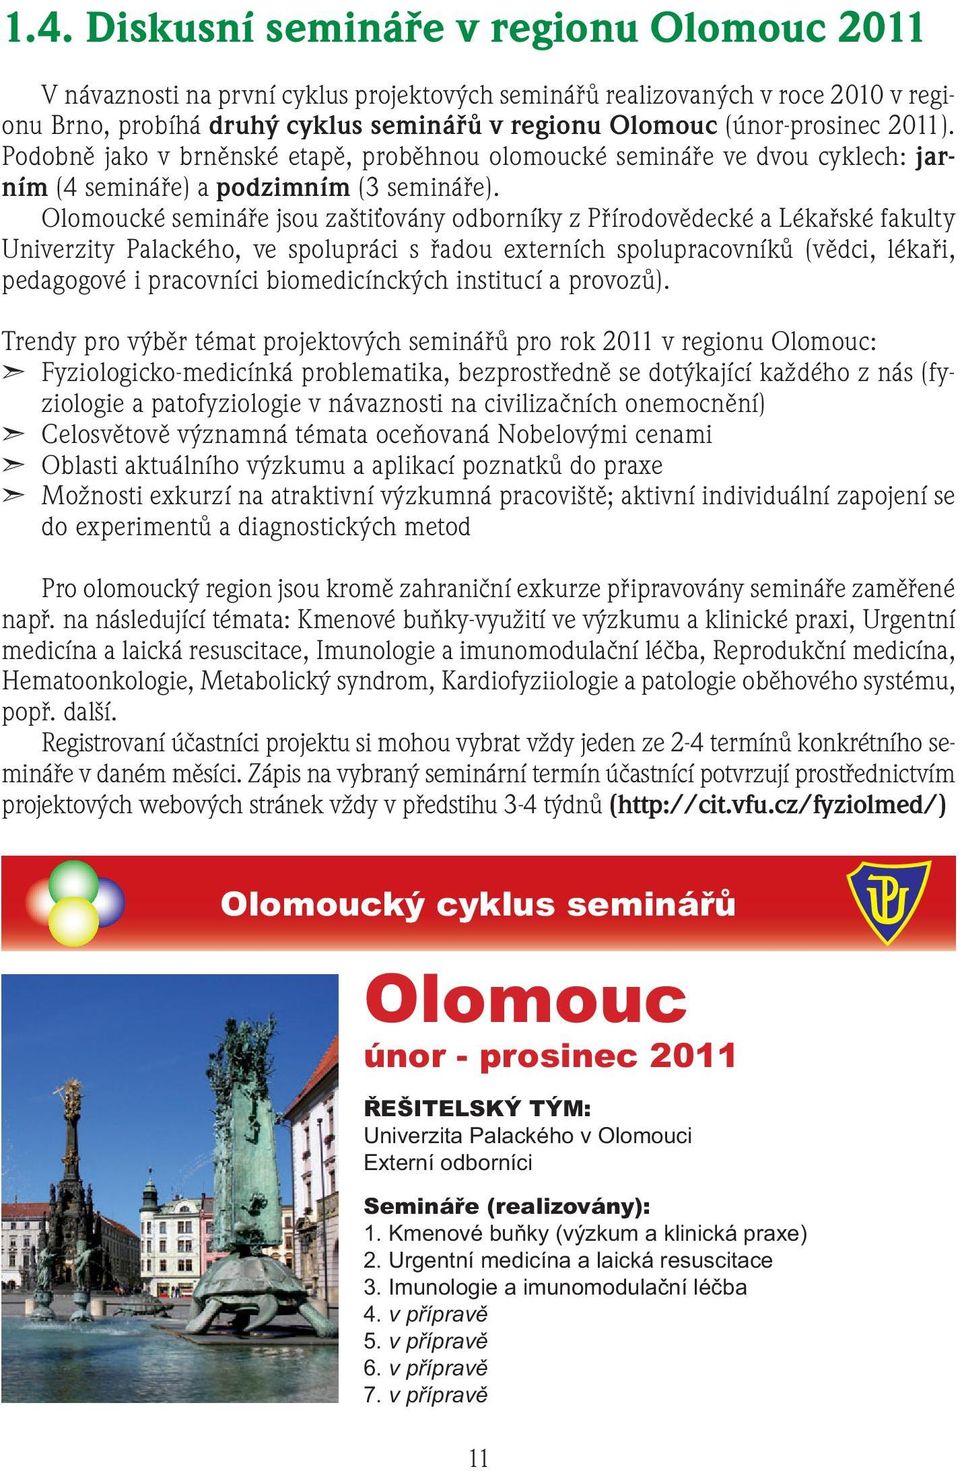 Olomoucké semináře jsou zaštiťovány odborníky z Přírodovědecké a Lékařské fakulty Univerzity Palackého, ve spolupráci s řadou externích spolupracovníků (vědci, lékaři, pedagogové i pracovníci